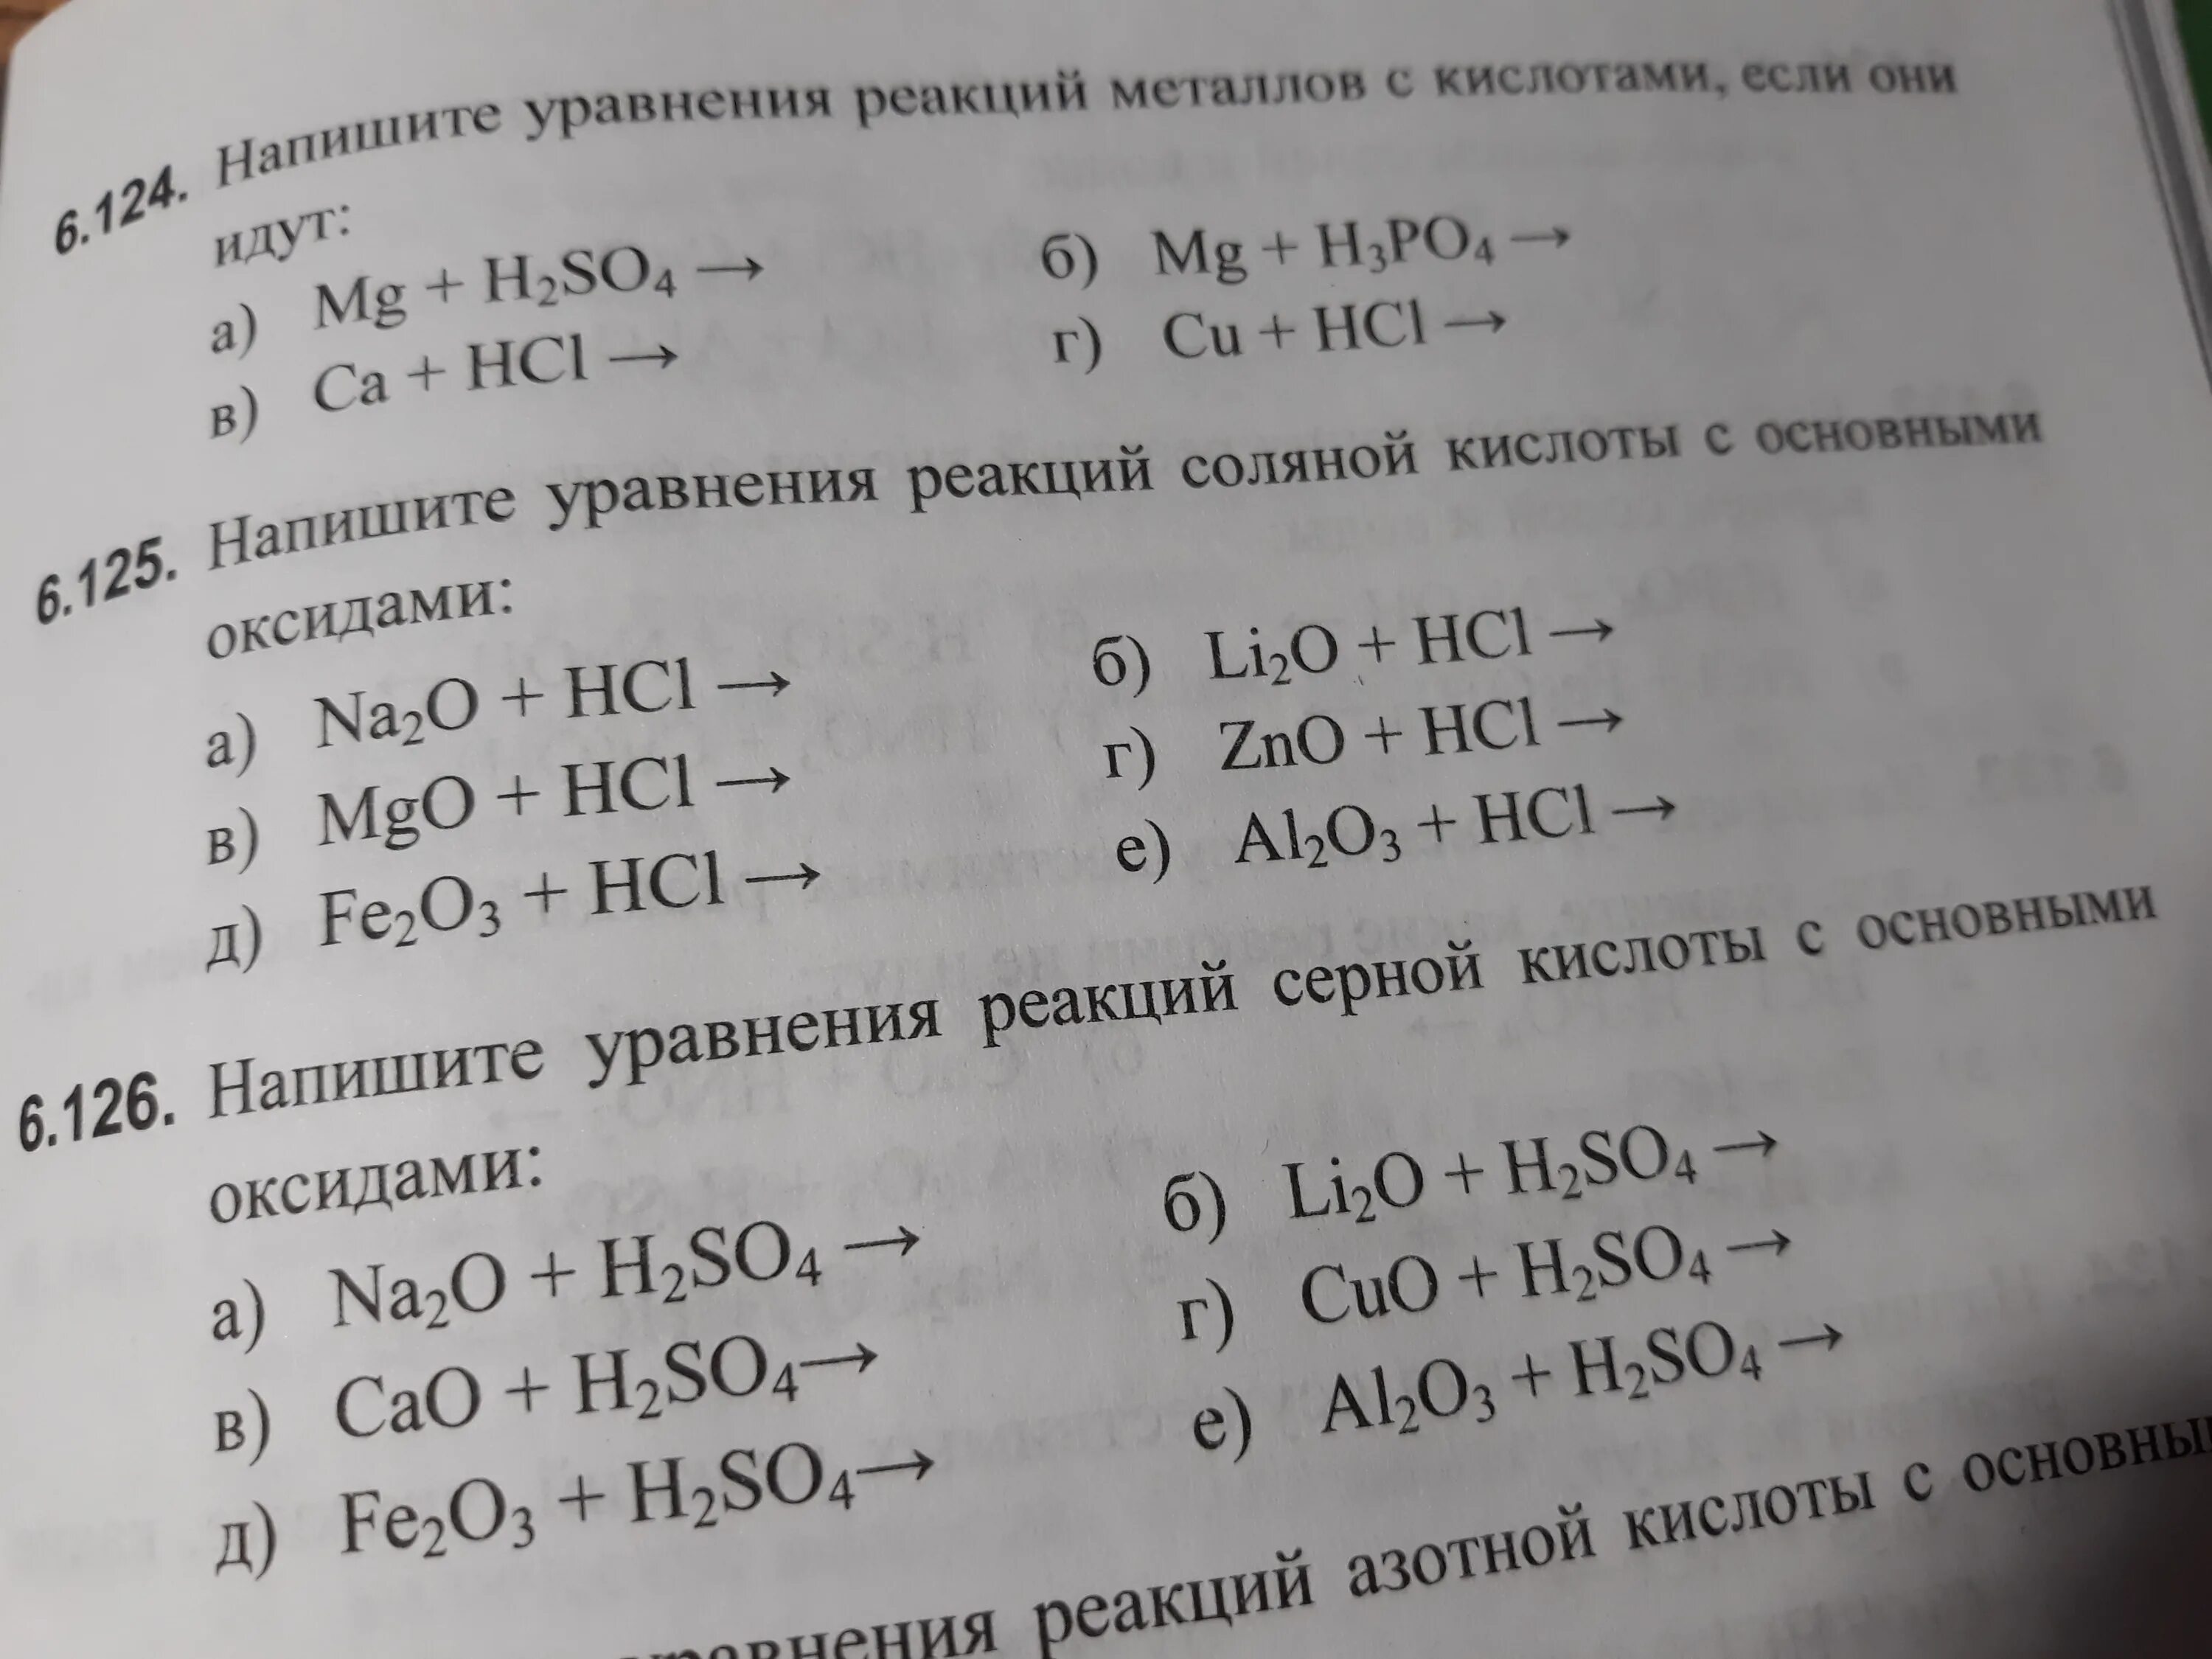 Mgo zno реакция. Уравнения реакций соляной кислоты с основными оксидами. Химическое уравнение соляной кислоты. Уравнение реакций соляной кислоты с оксидами. Напишите уравнения реакций металлов с кислотами.